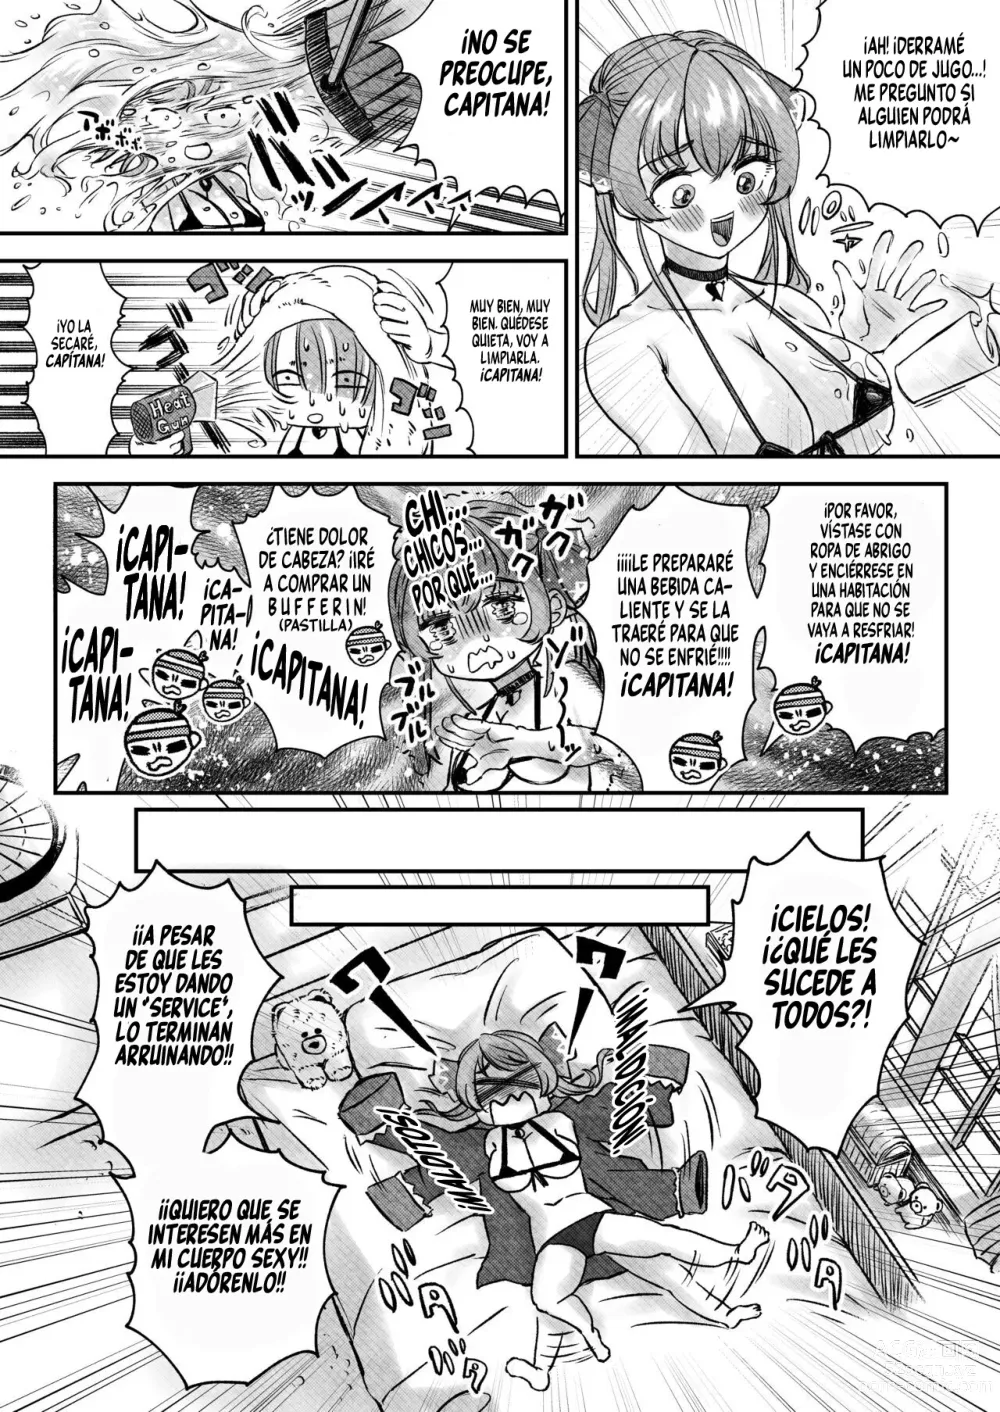 Page 5 of doujinshi Esta bien para mi abrir el cofre del tesoro?